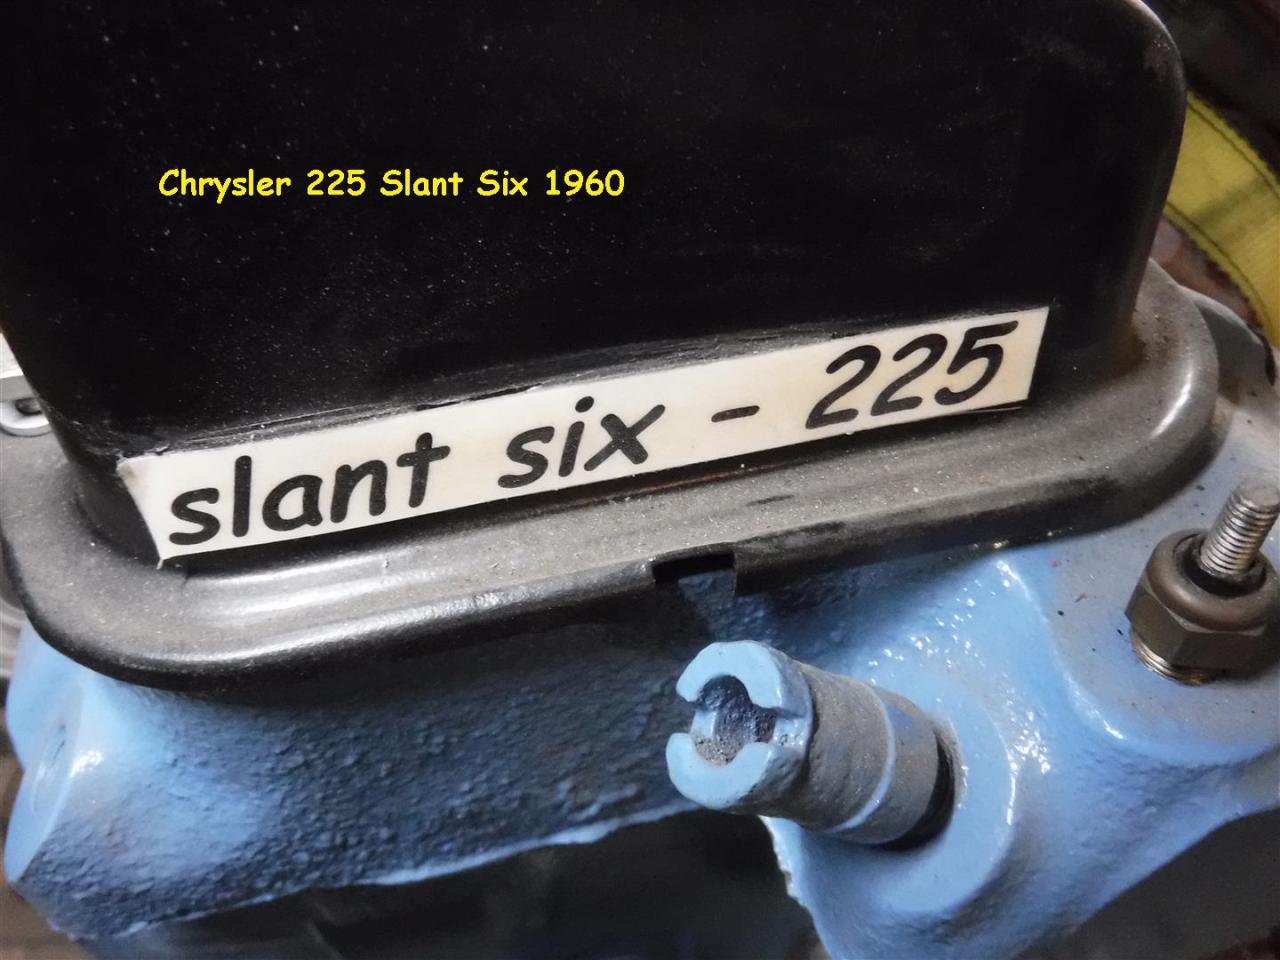 1960 Chrysler engine 225 slant six